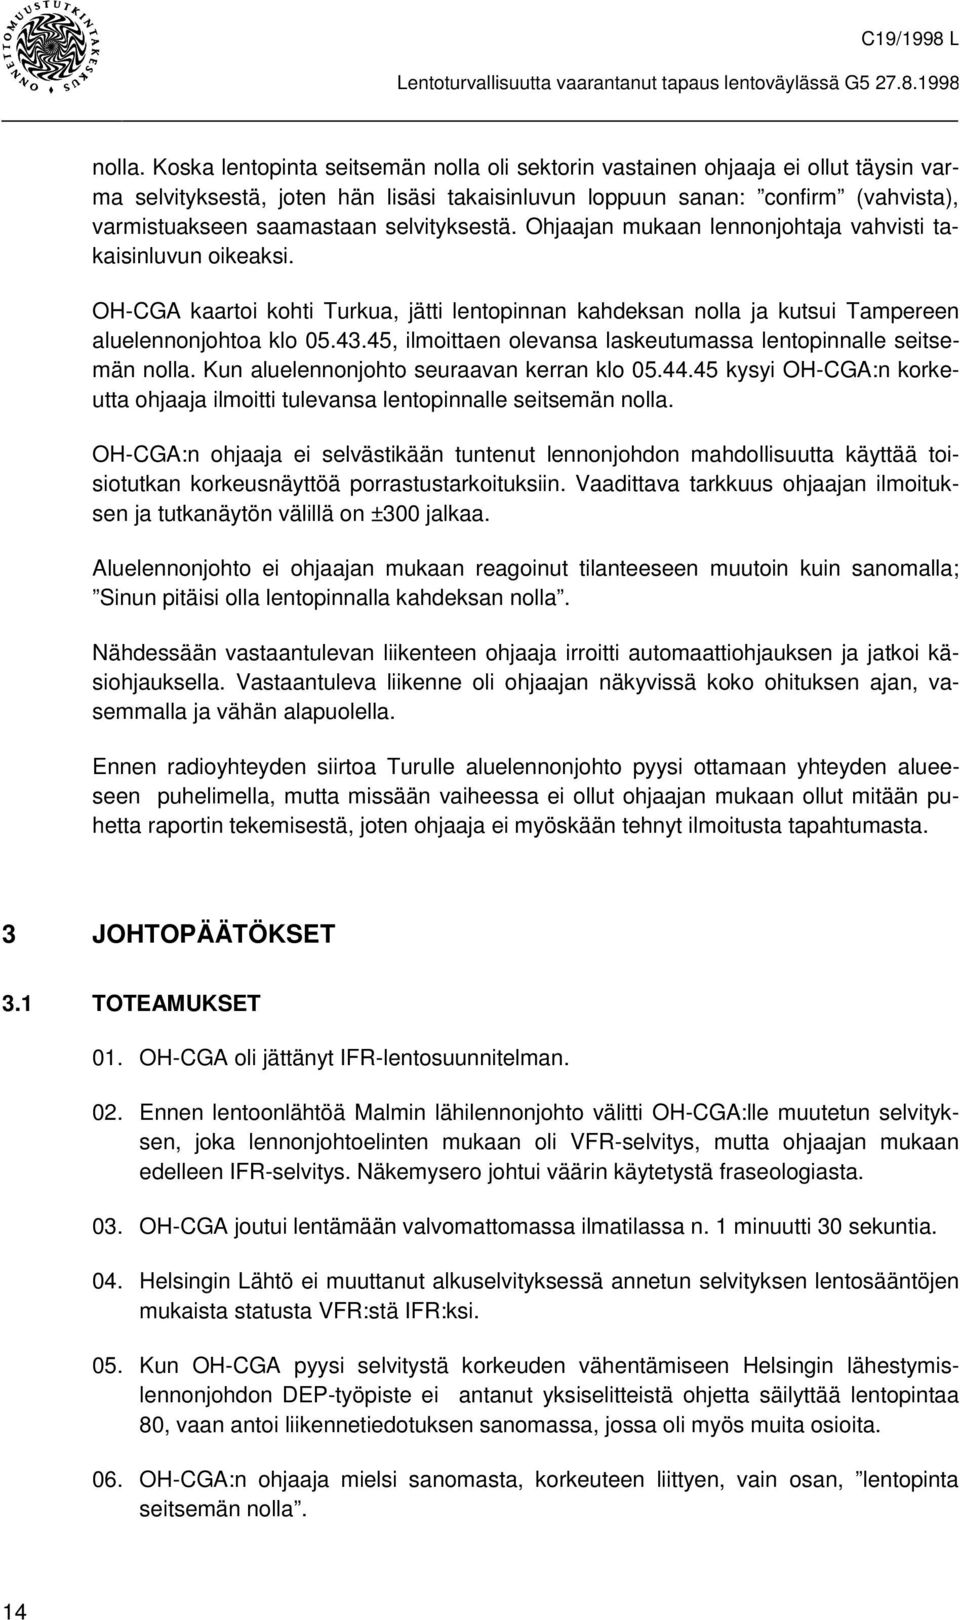 selvityksestä. Ohjaajan mukaan lennonjohtaja vahvisti takaisinluvun oikeaksi. OH-CGA kaartoi kohti Turkua, jätti lentopinnan kahdeksan nolla ja kutsui Tampereen aluelennonjohtoa klo 05.43.